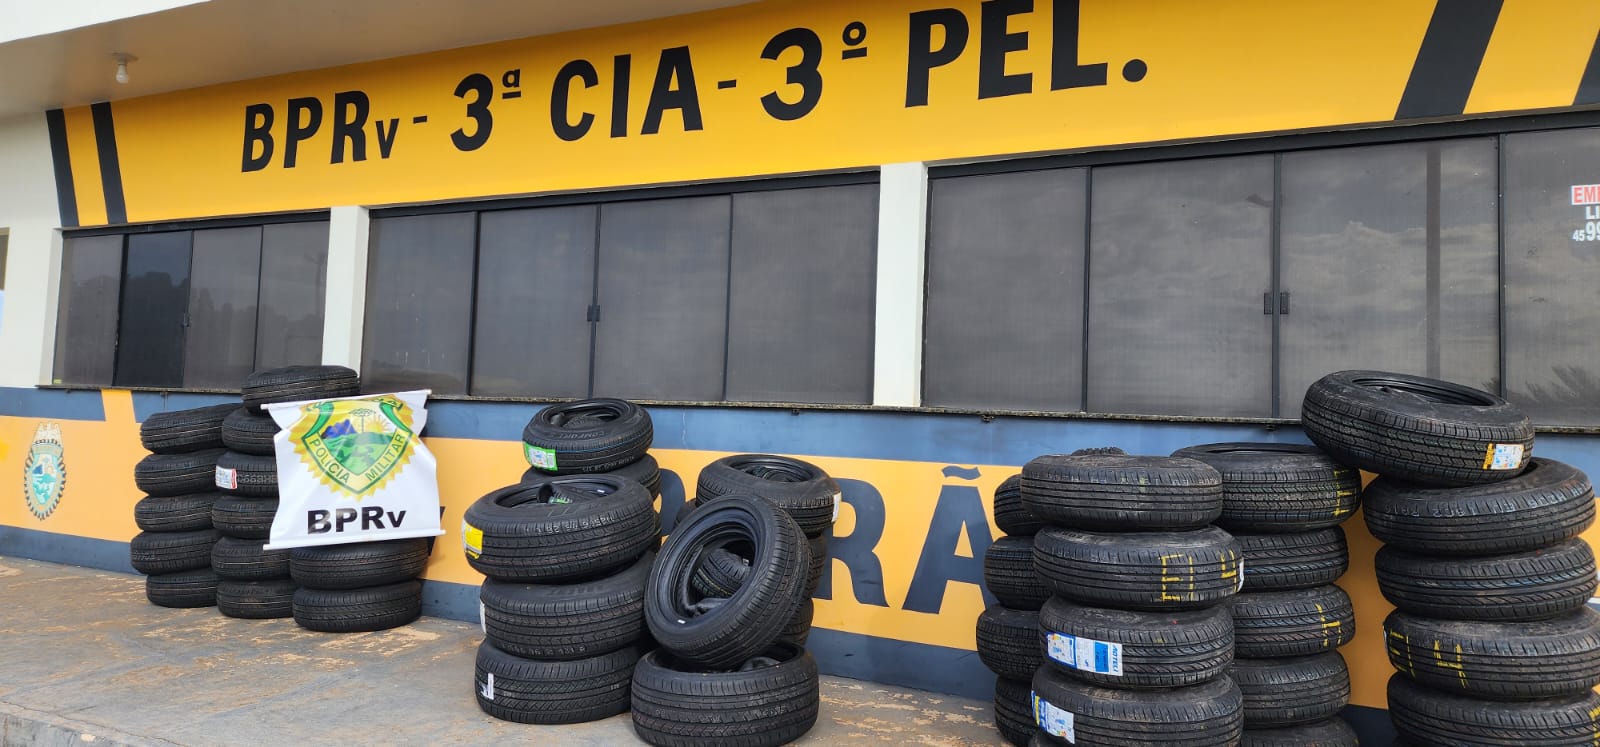 Jornal Ilustrado - Três veículos carregados com pneus contrabandeados são apreendidos na PR-323  